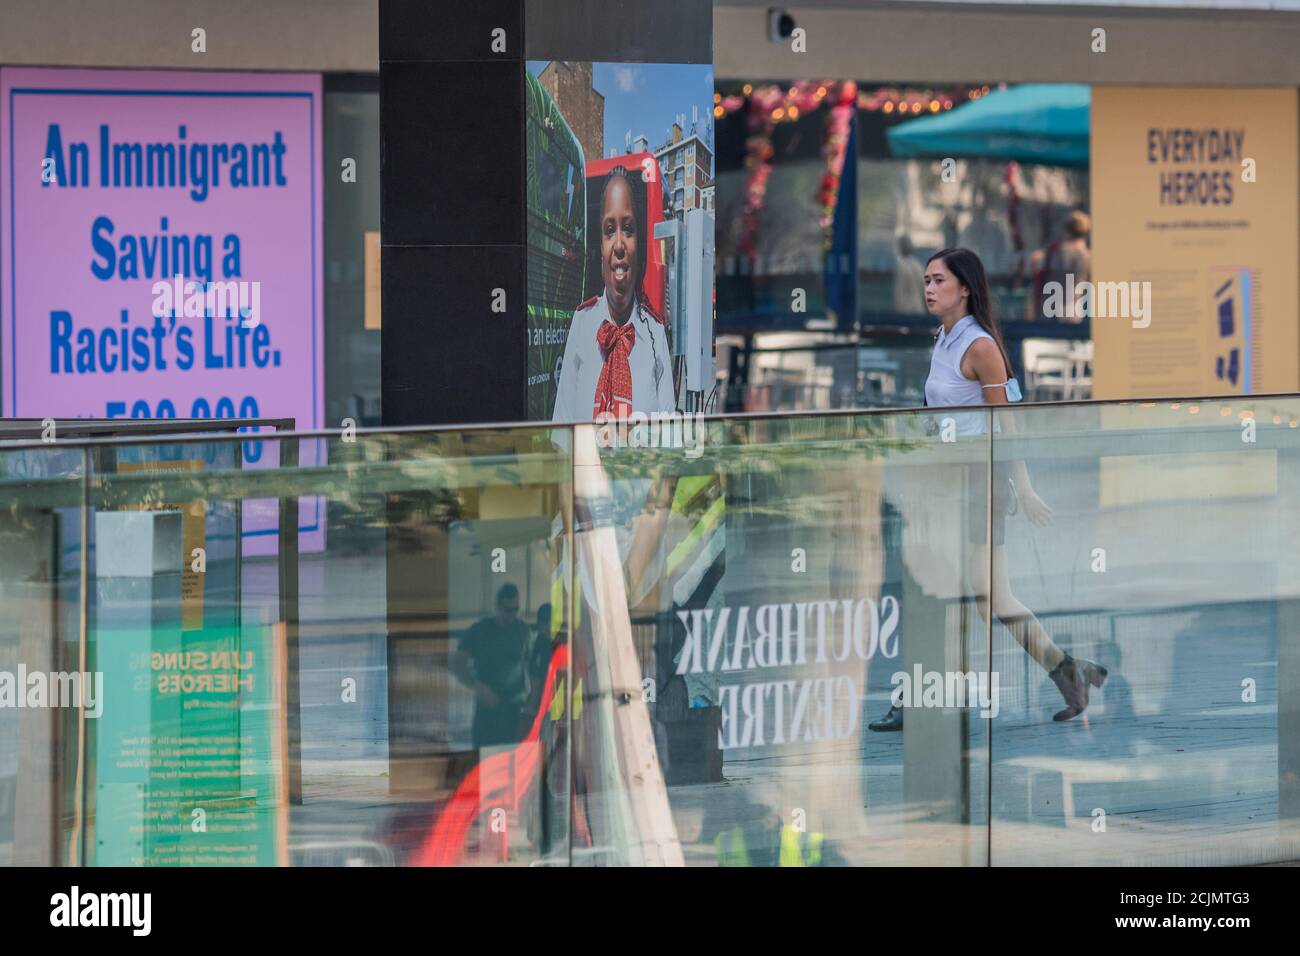 Londres, Reino Unido. 15 de septiembre de 2020. Everyday Heroes es una exposición al aire libre en paredes y ventanas alrededor del Southbank Center. Celebra las contribuciones que los trabajadores clave y el personal de primera línea han hecho durante la pandemia del coronavirus. Crédito: Guy Bell/Alamy Live News Foto de stock